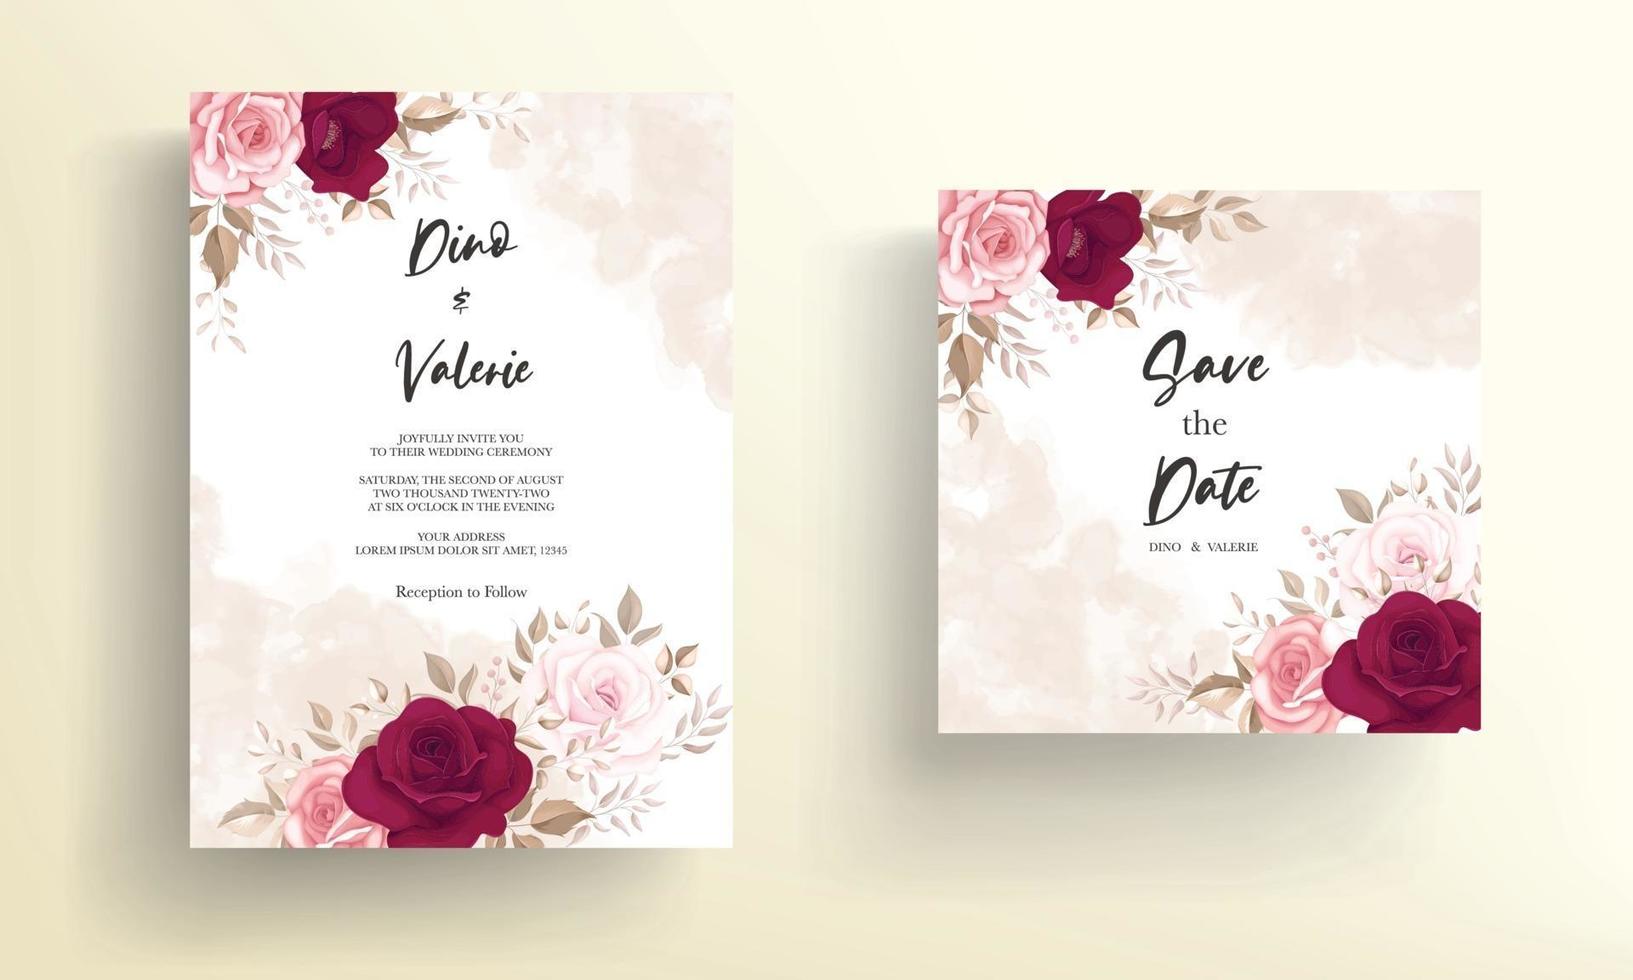 carte d'invitation de mariage élégante avec de belles roses marron vecteur